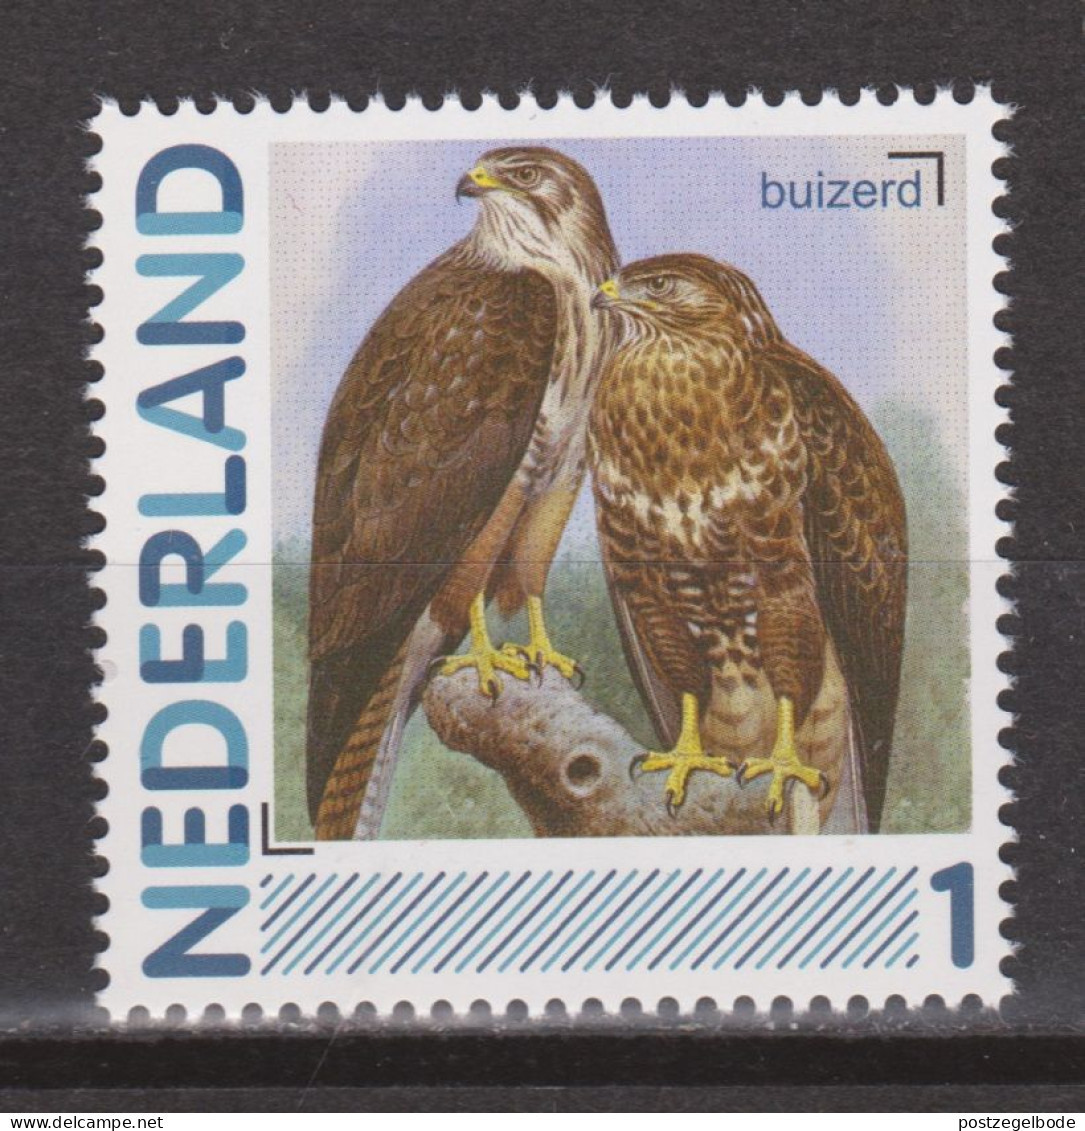 Nederland Netherlands Pays Bas MNH Roofvogel Oiseau De Proie Ave De Rapina Bird Of Prey Buizerd Buzzard Buse Ratonero - Aigles & Rapaces Diurnes